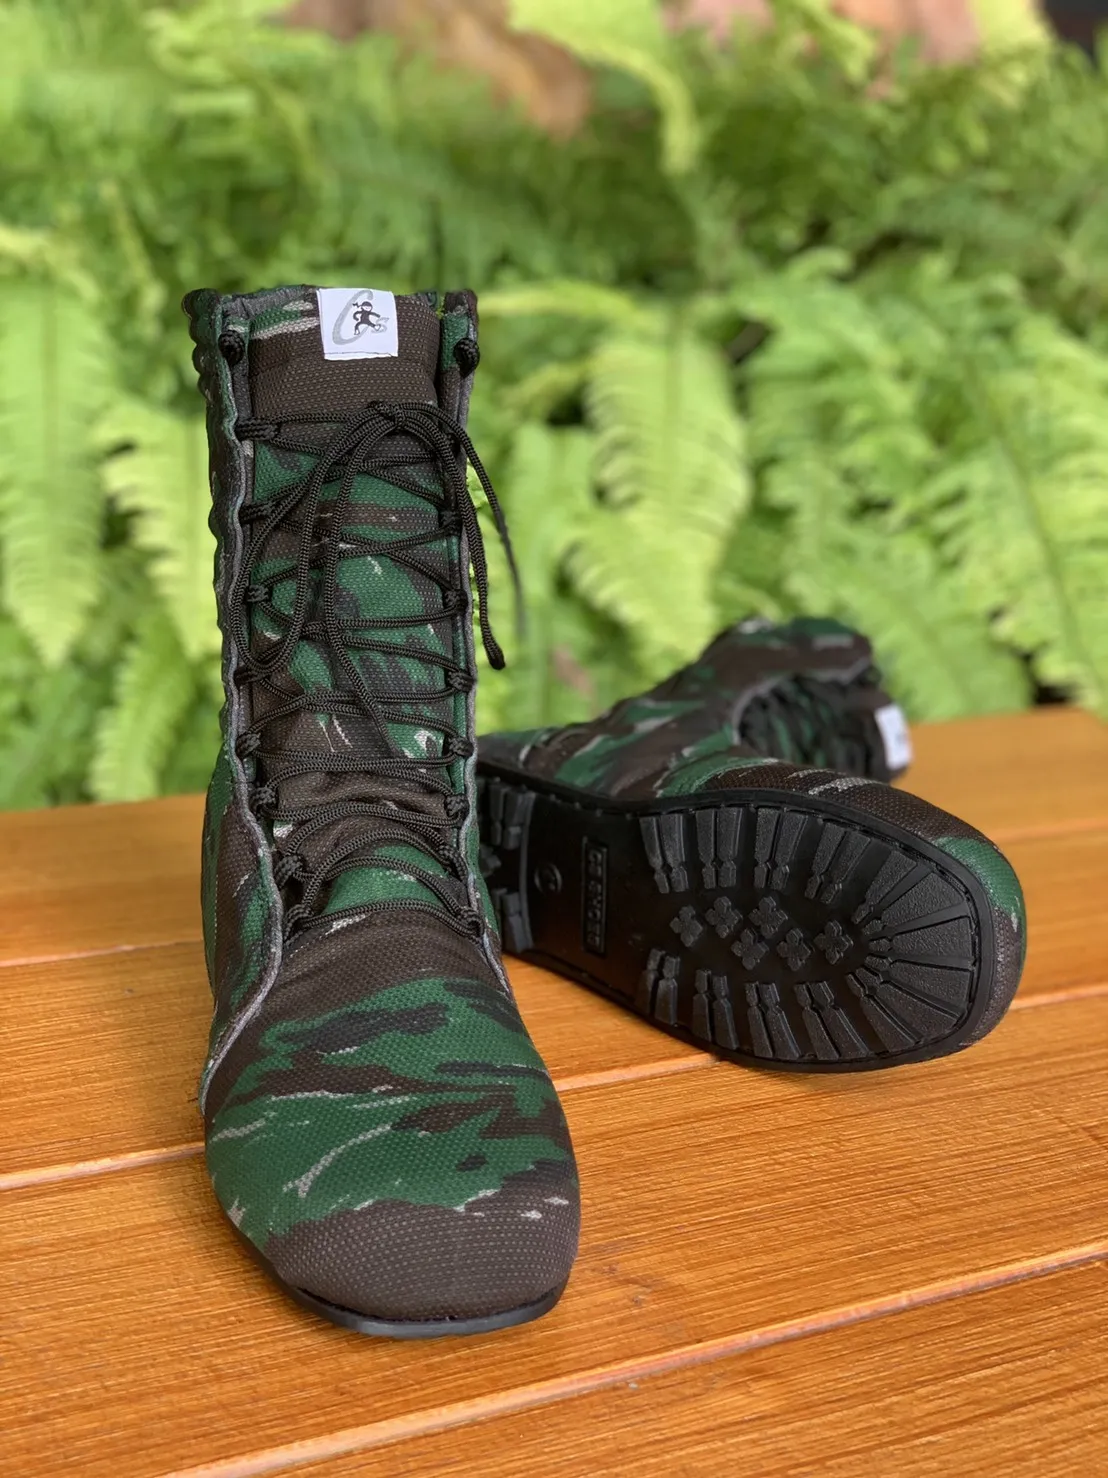 รองเท้าพื้นยางดำ รุ่น CS2006 ใส่ง่ายด้วยซิปข้าง รองเท้าบูทสูง รองเท้าหุ้มข้อสูง รองเท้าเดินป่า รองเท้าลุยโคลน รองเท้าใส่ท่องเที่ยงเชิงนิเวศน์ พื้นรองเท้าเป็นยางพาราคุณภาพดี ยึดเกาะทุกสภาพพื้นผิว เชือกไขว้ รัดกระชับหน้าแข้ง ทำให้คล่องตัวขณะเดิน (ส่งฟรี)